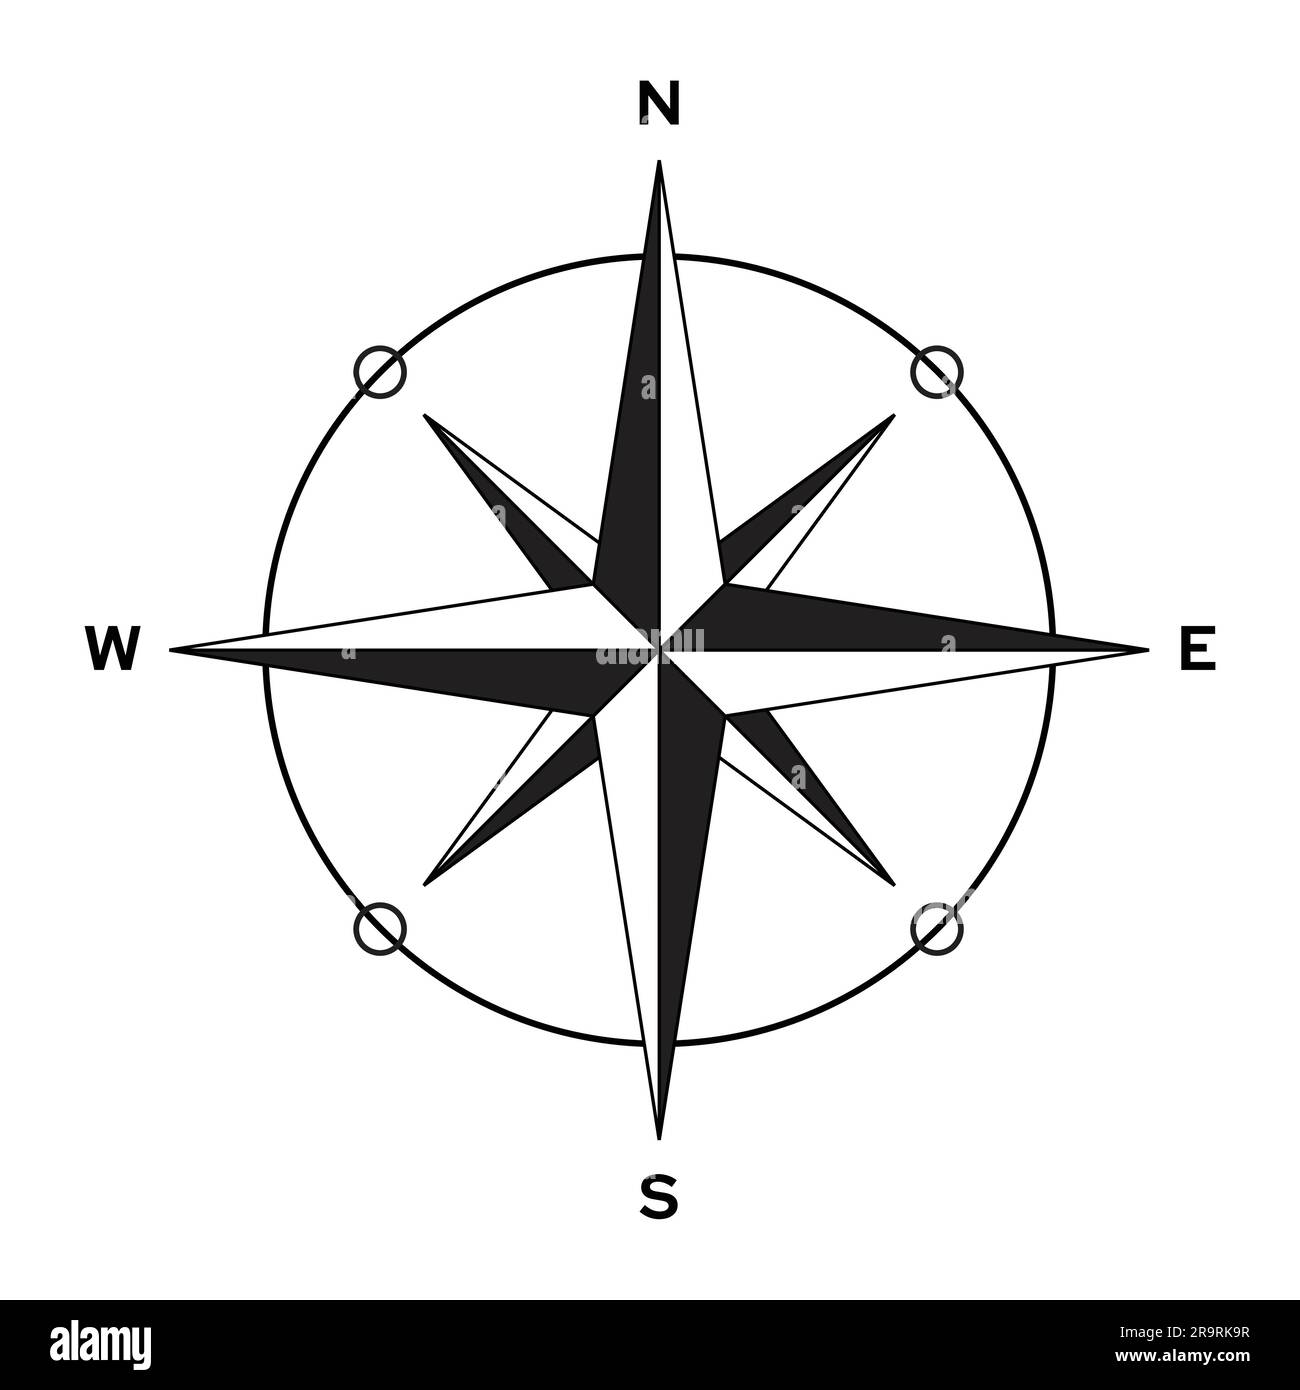 Bussola nera su sfondo bianco, rosetta North West East South Star simbolo forma vento segno vettoriale icona indicatore di direzione Illustrazione Vettoriale